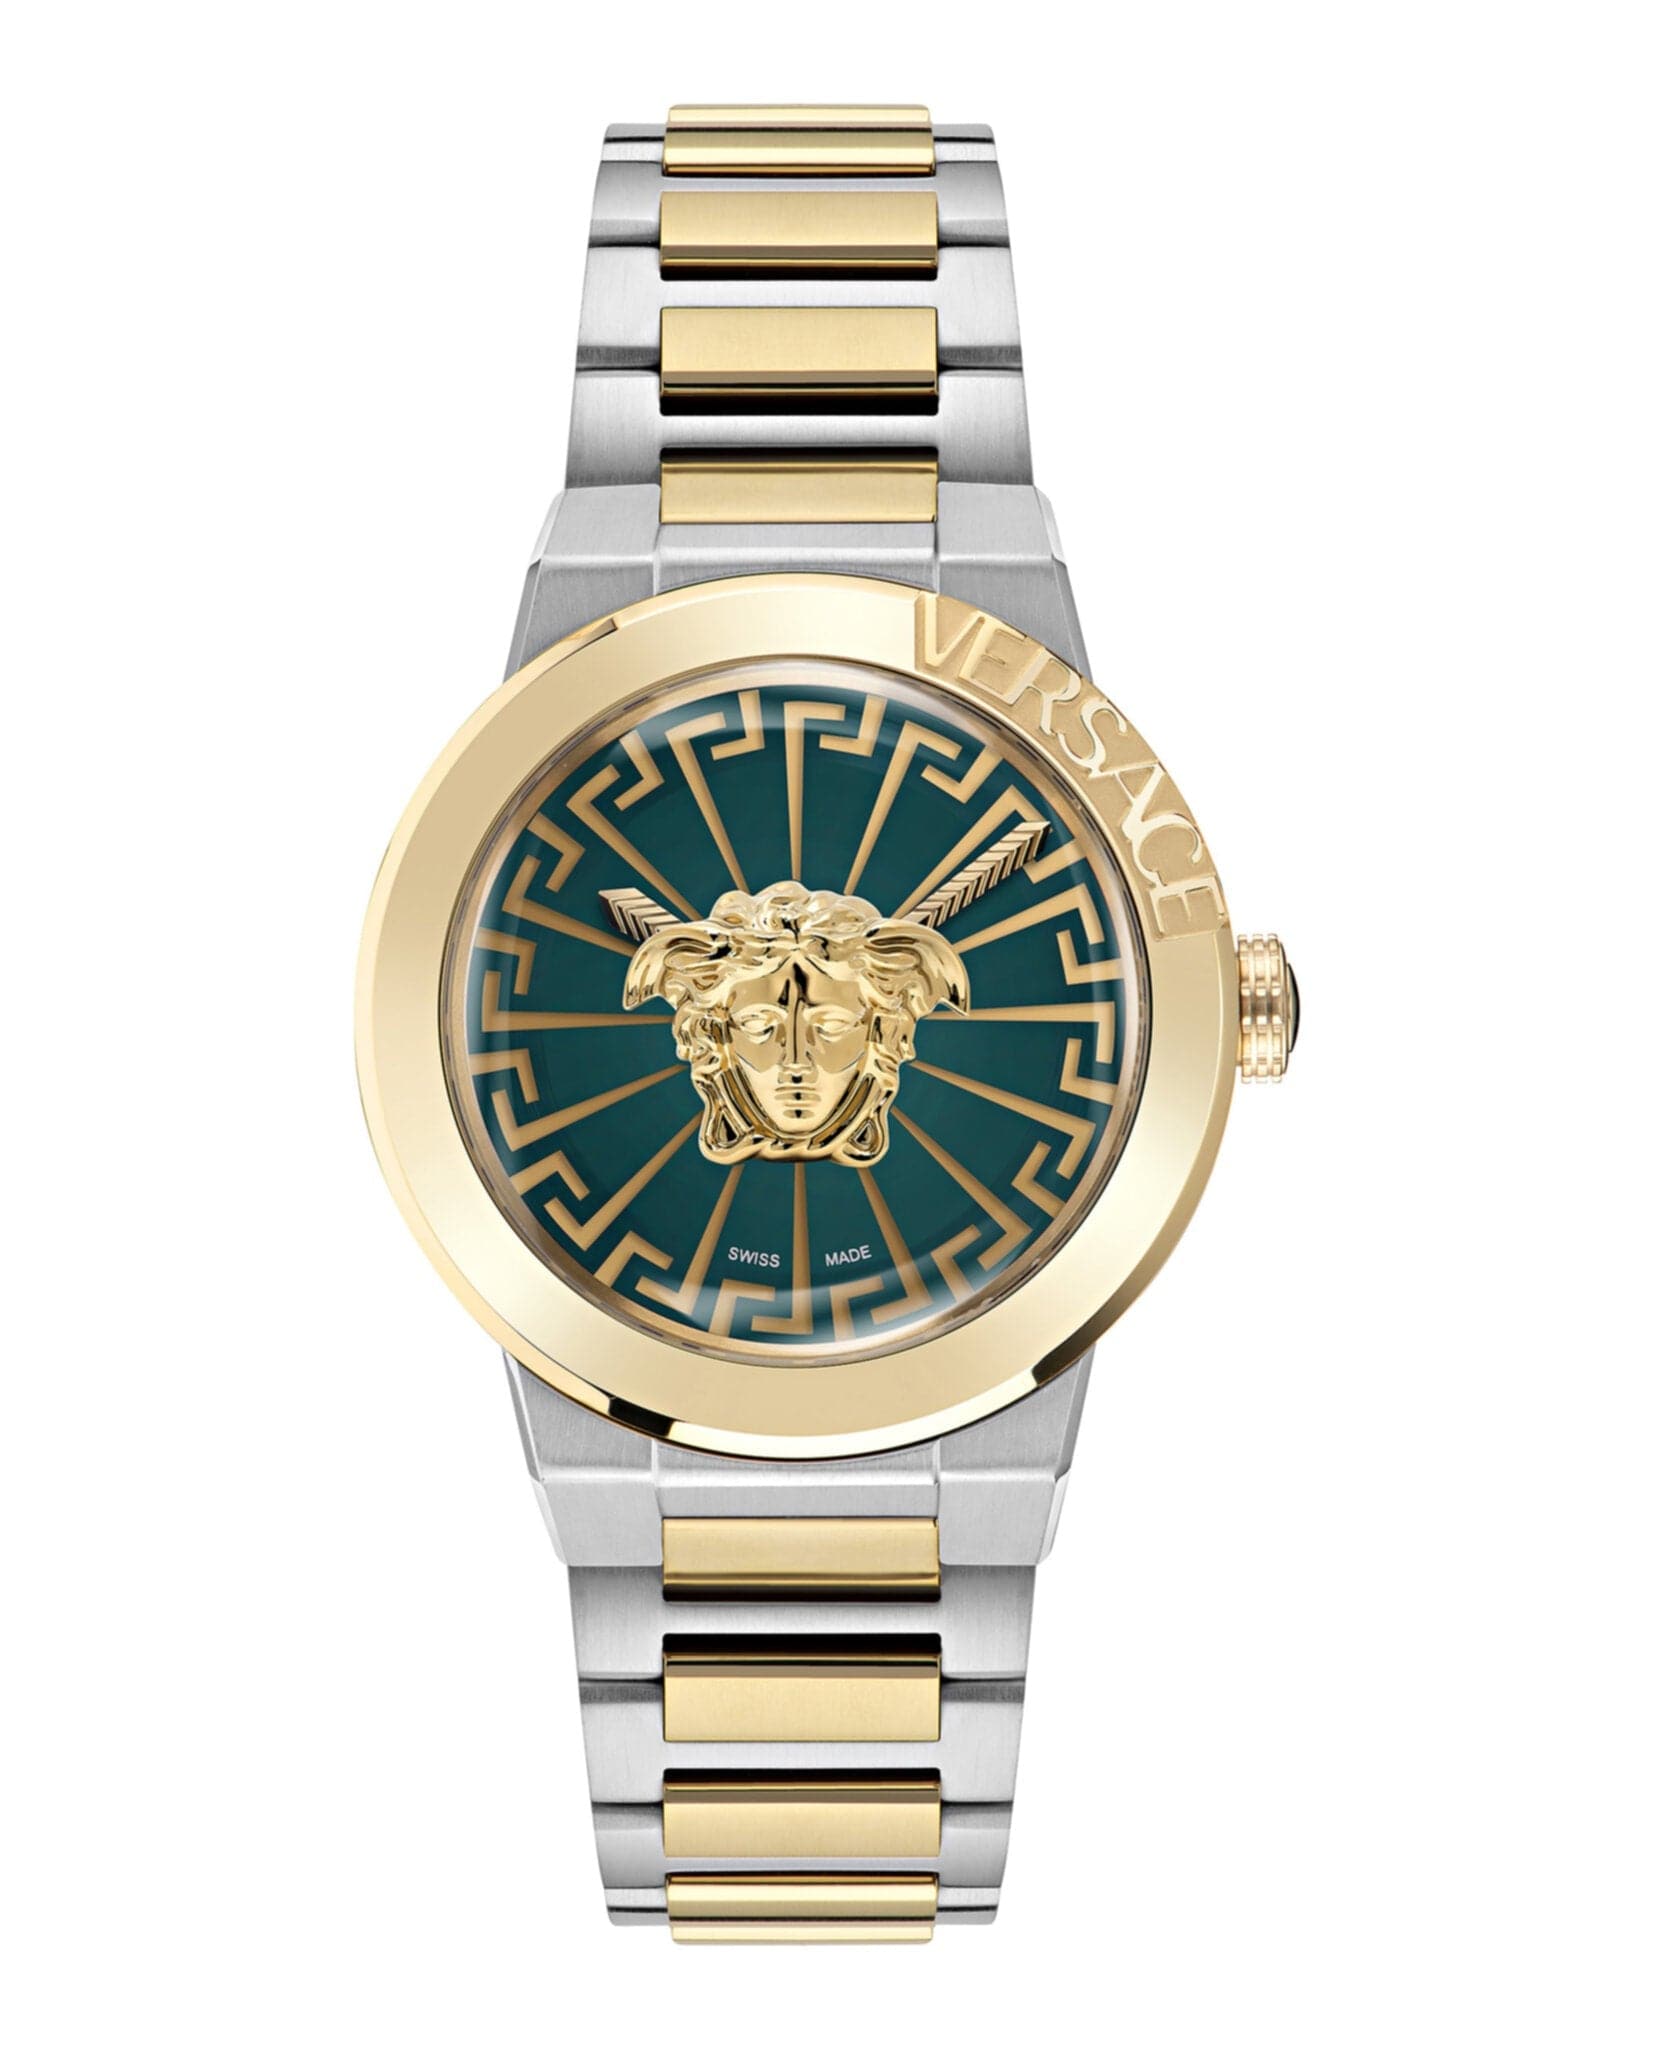 VERSACE Medusa Infinite Bracelet Watch VE3F00422 - Kamal Watch Company